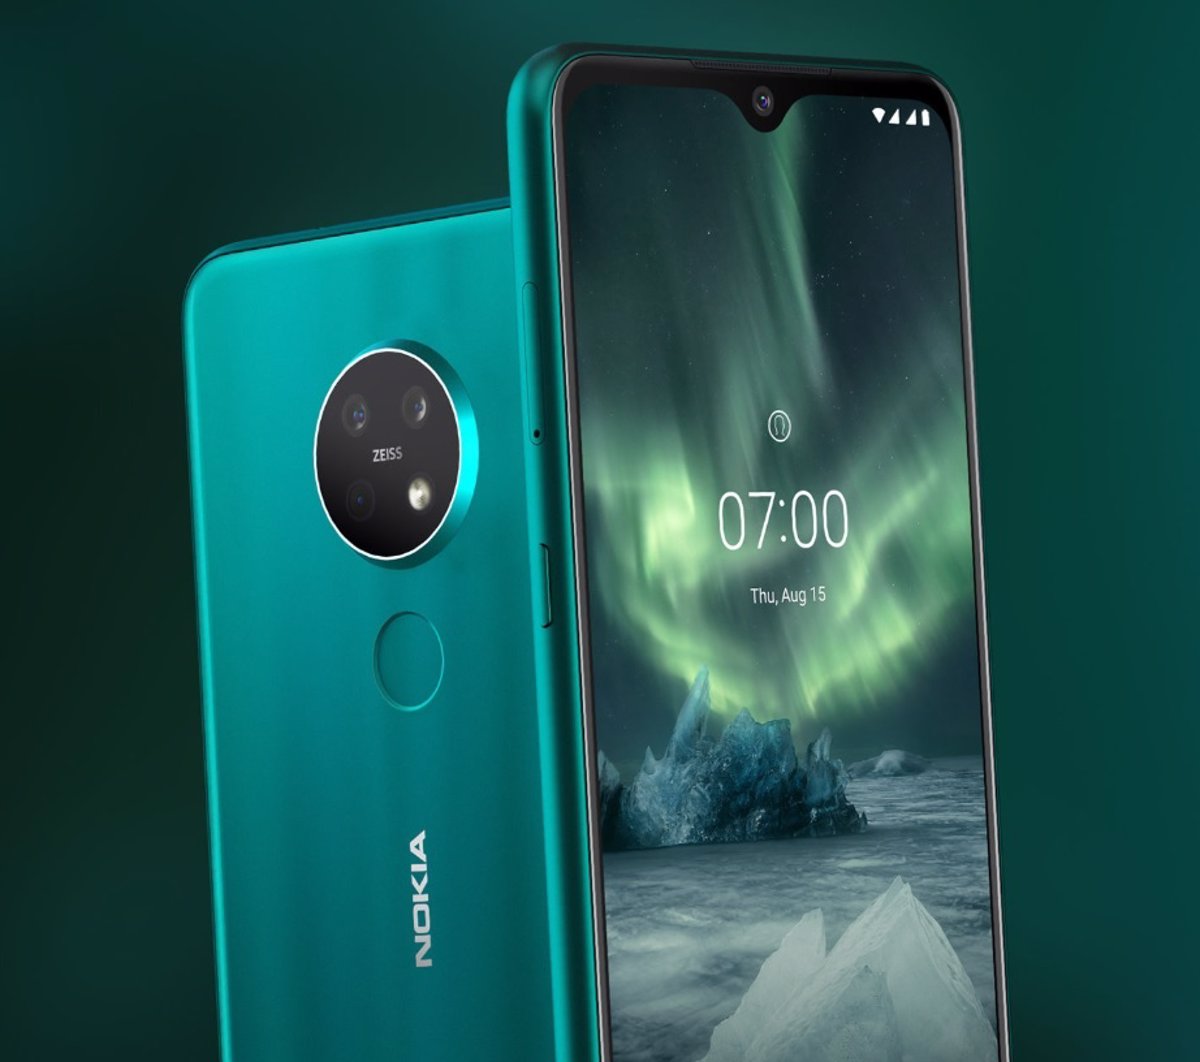 Nokia (HMD) lanzaría gama alta con doble cámara y Snapdragon 835